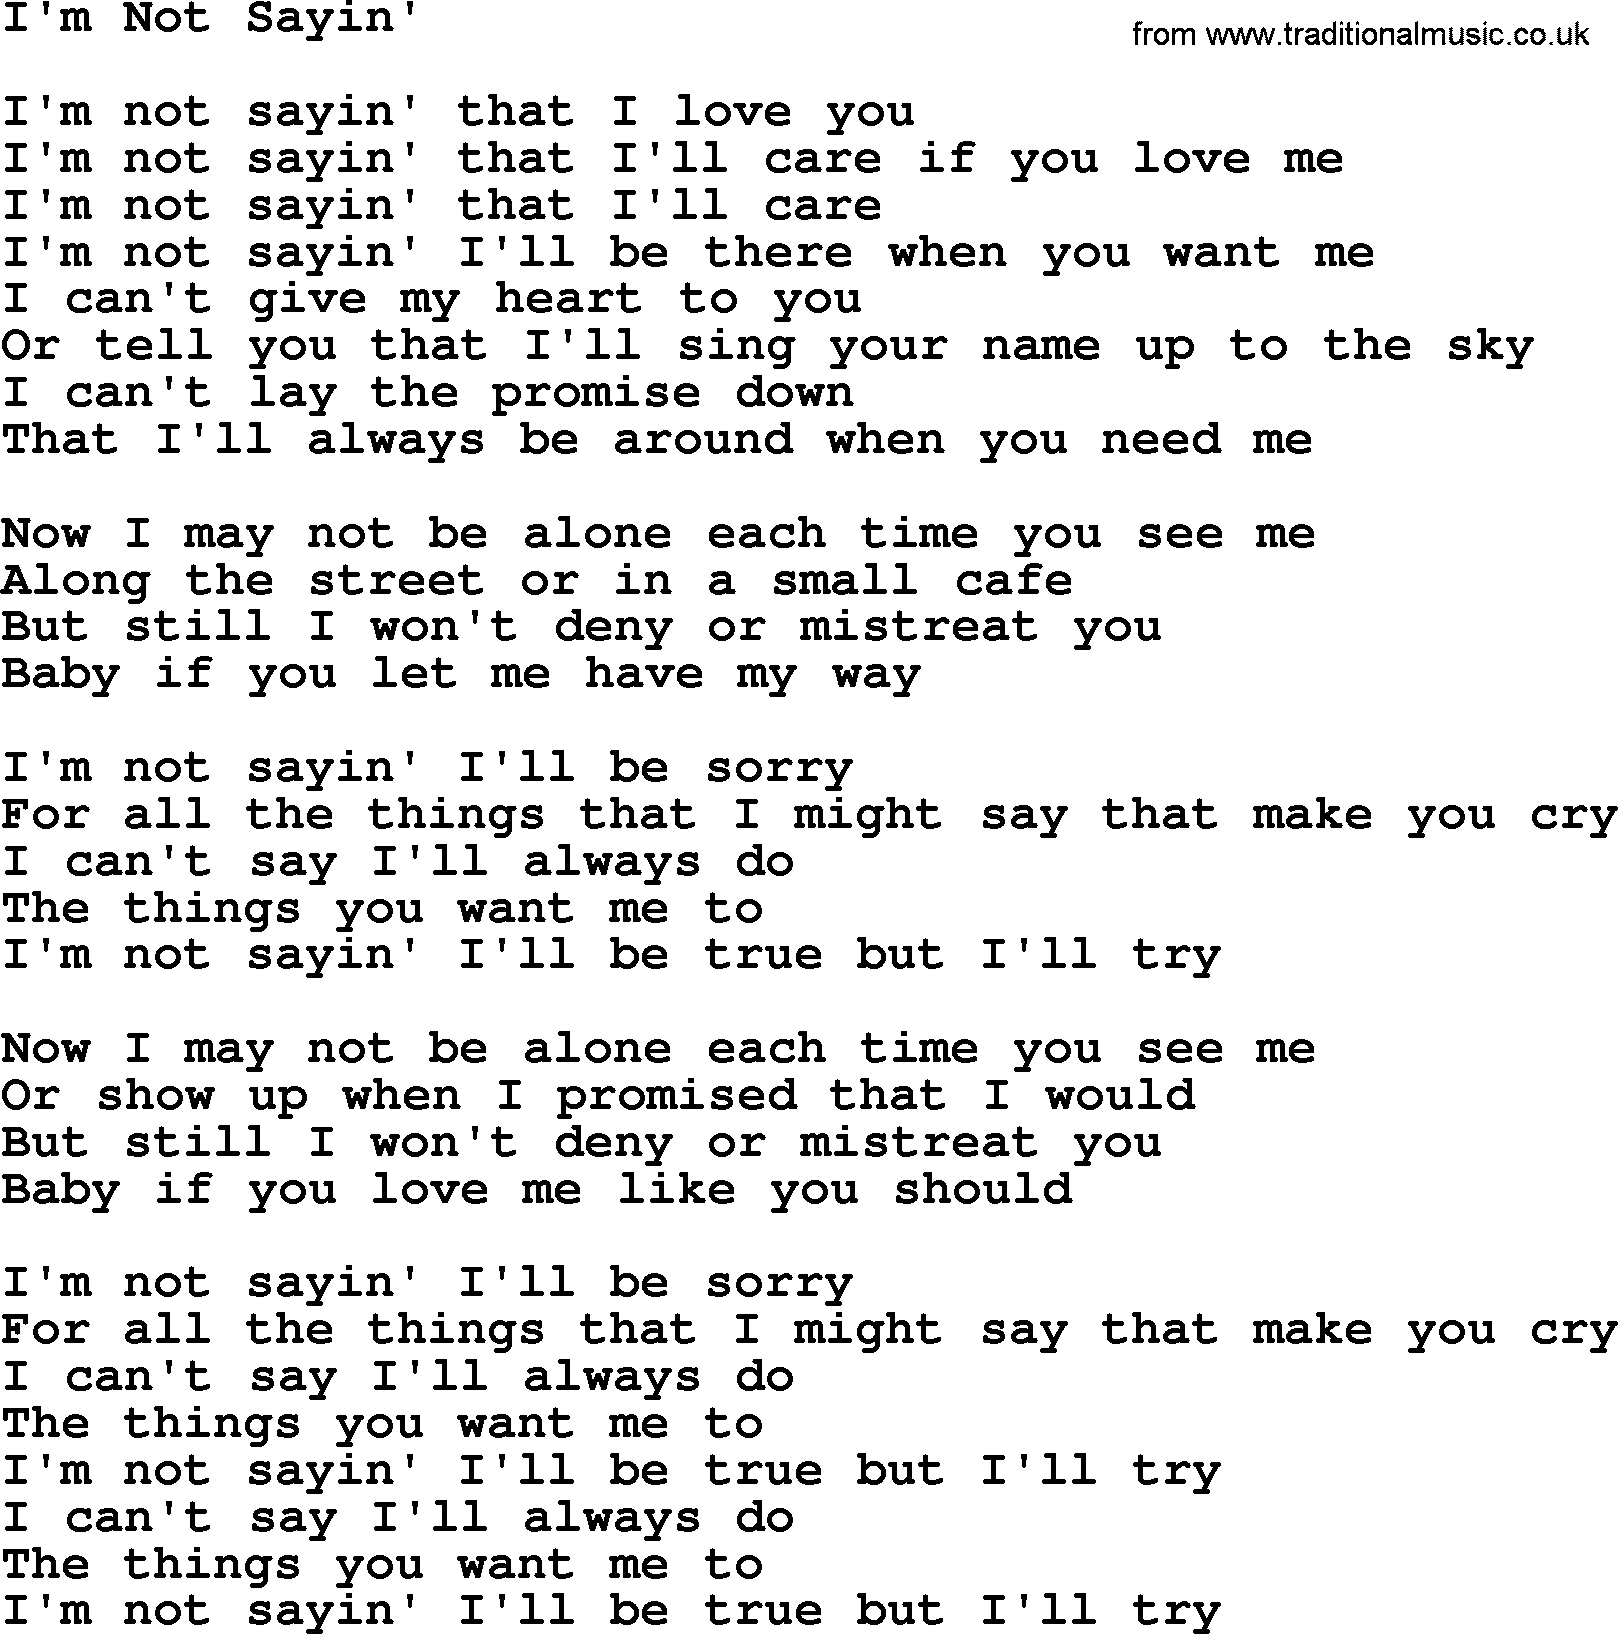 Gordon Lightfoot song I'm Not Sayin', lyrics